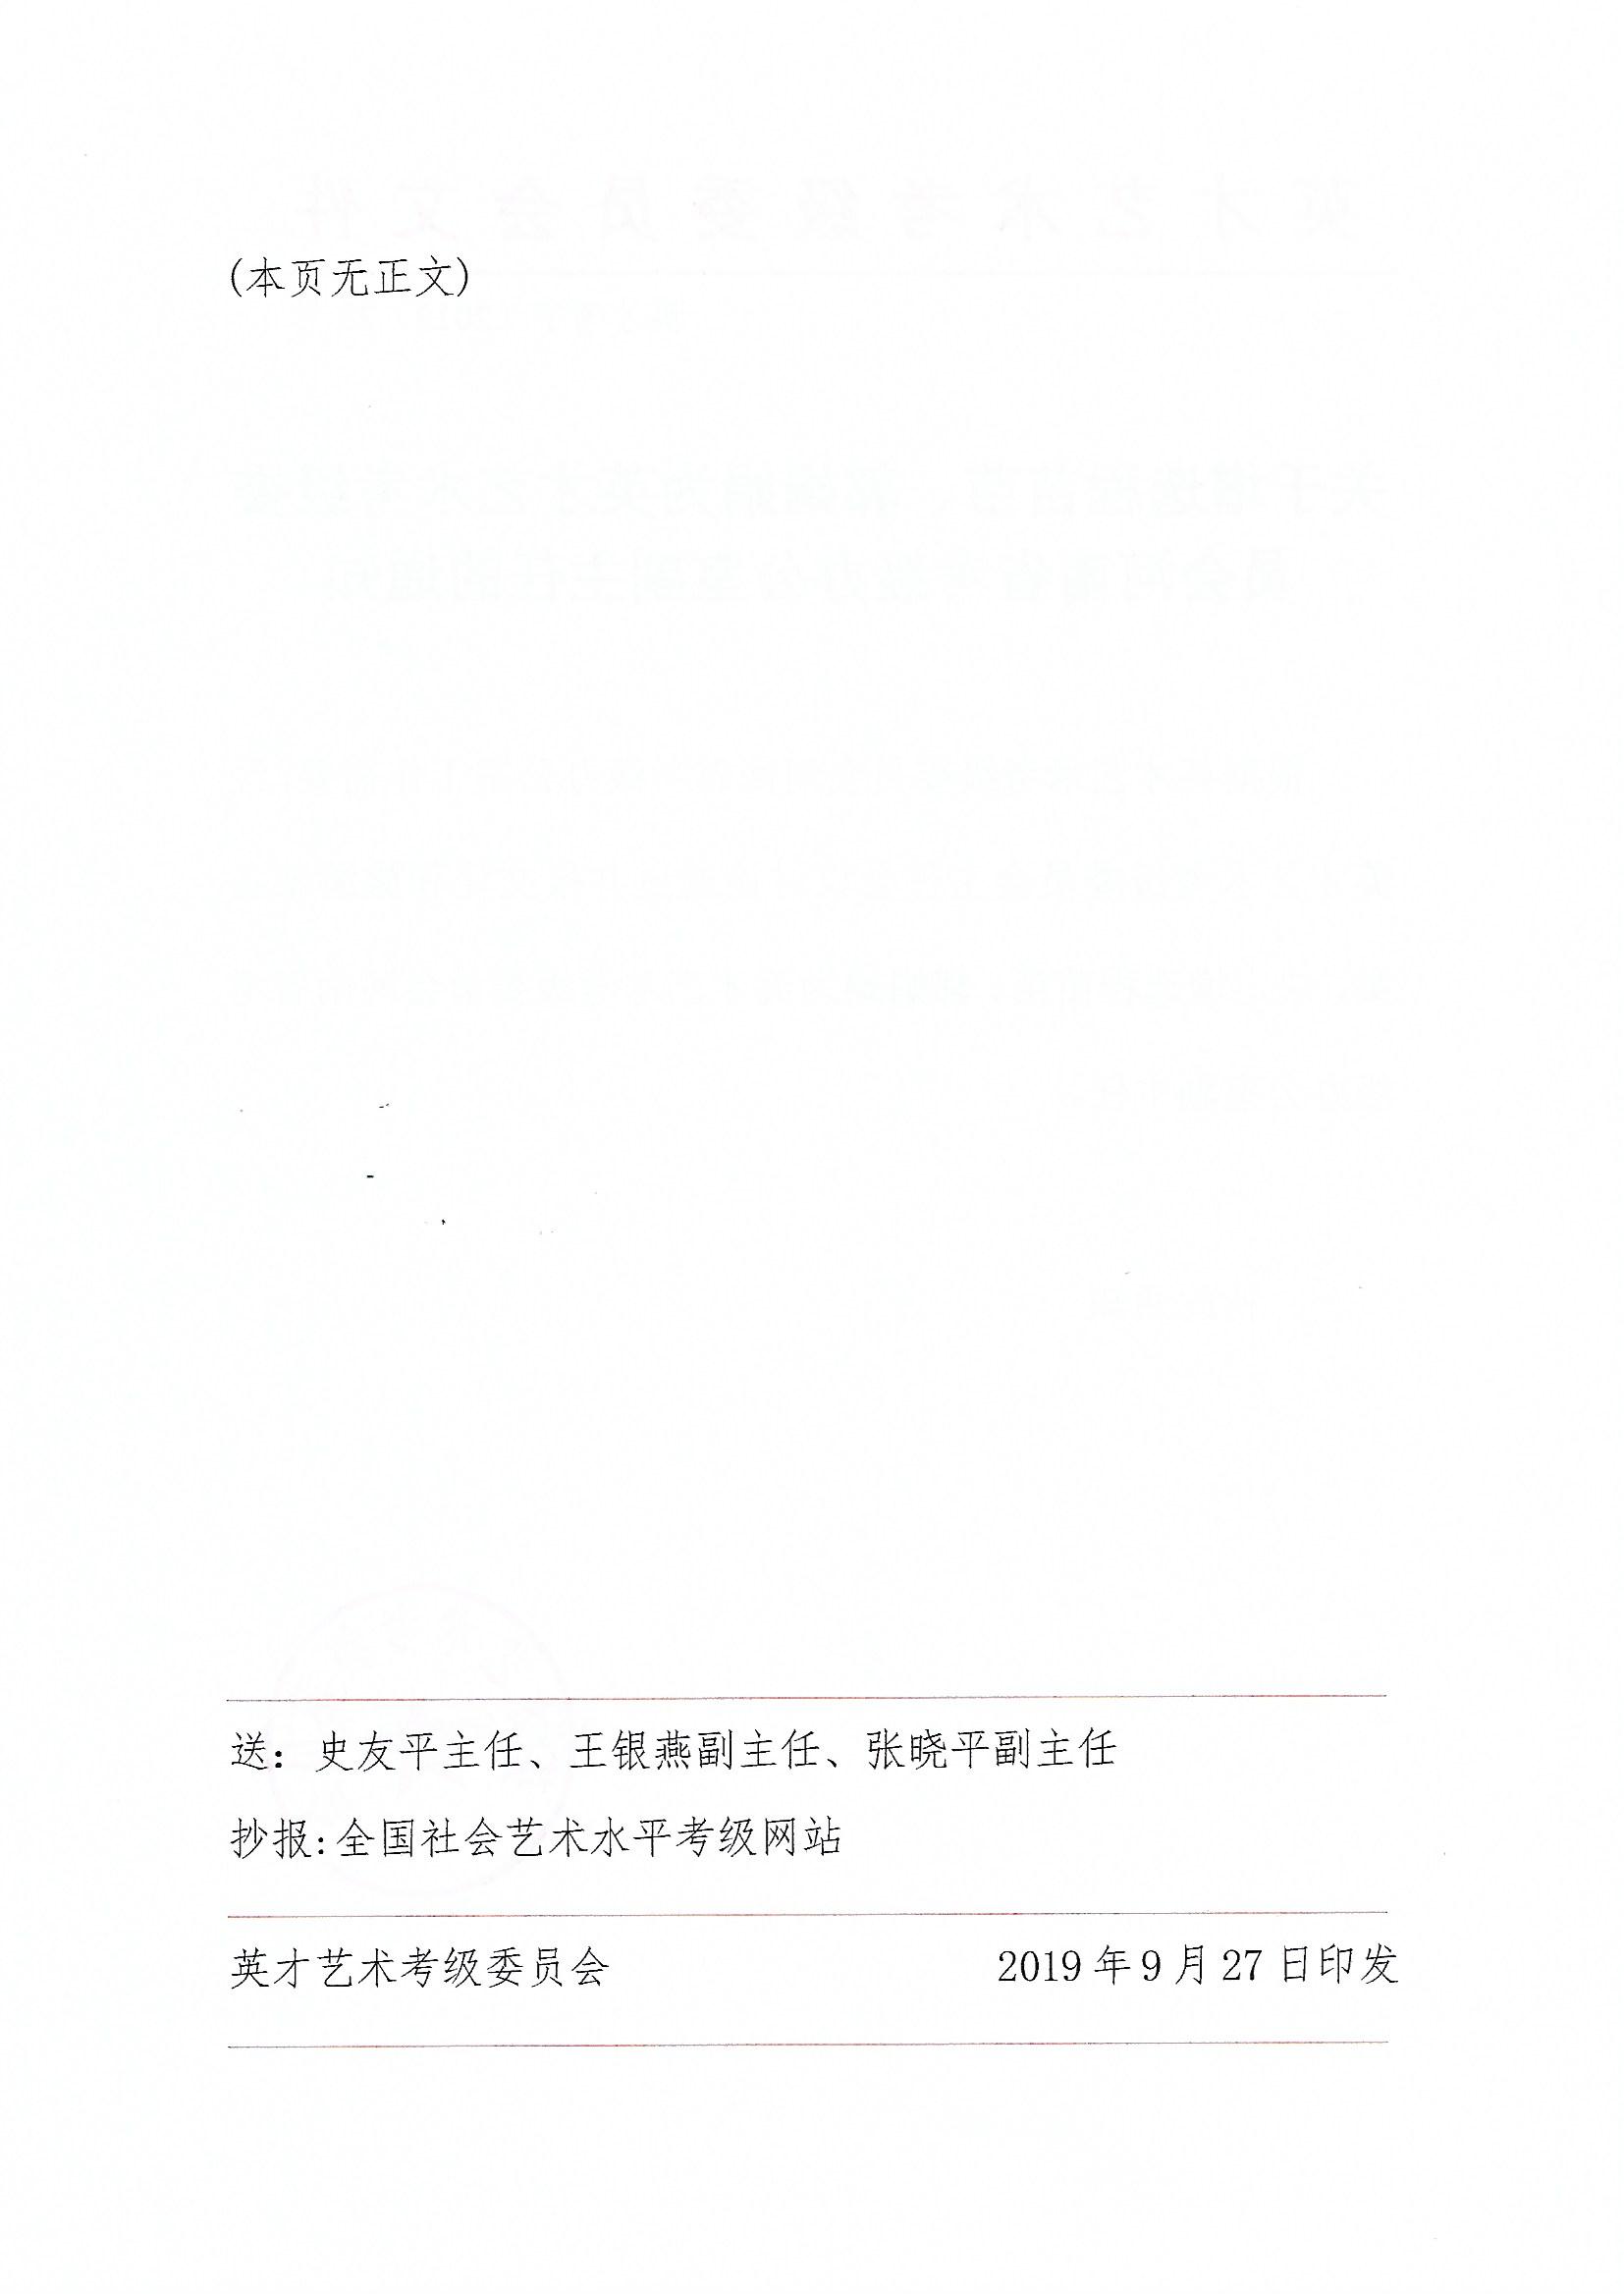 关于增选程苗苗、郭娟娟为英才艺术考级委员会河南省考级办公室副主任的通知